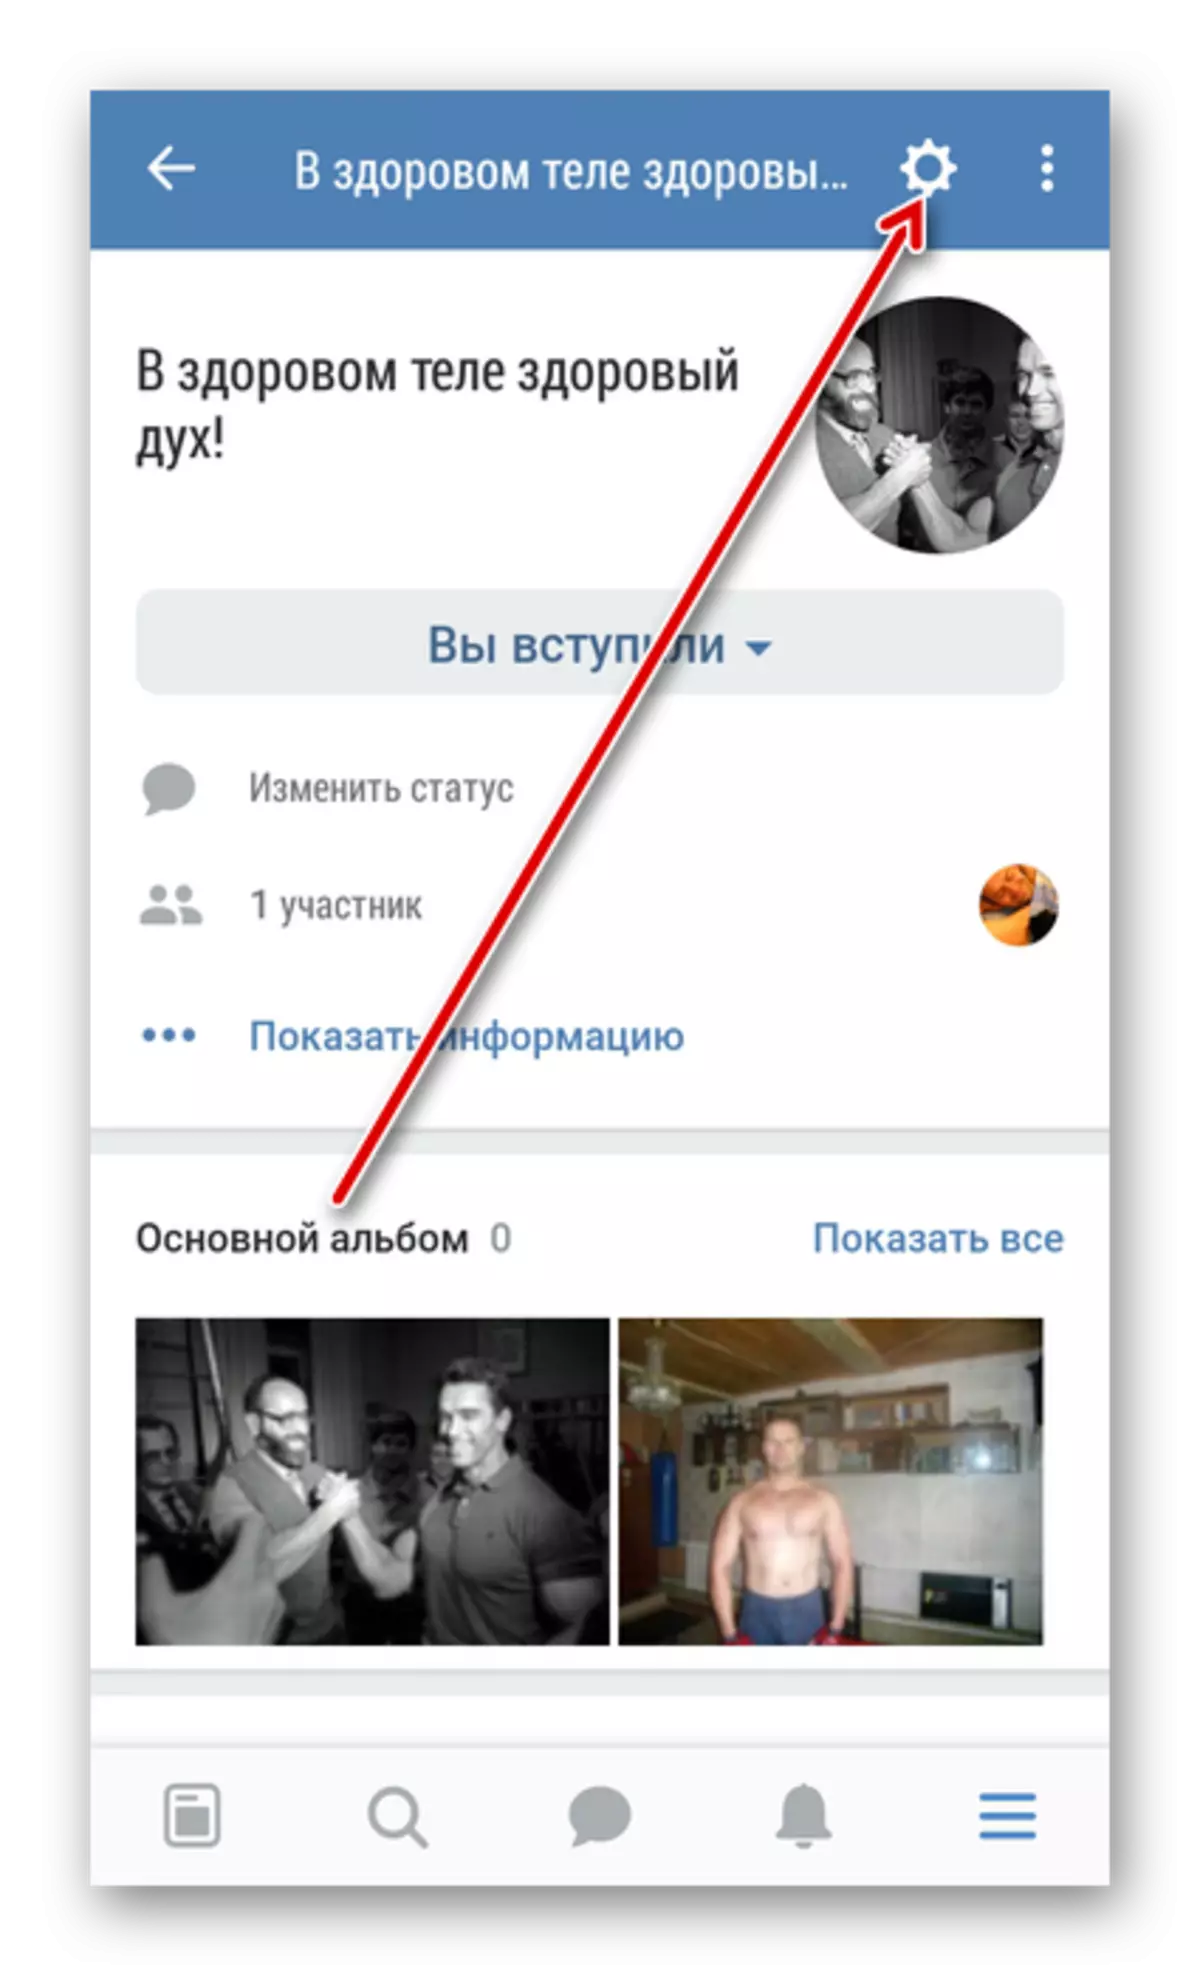 Уваход у налады сваёй групы ў дадатку Вконтакте